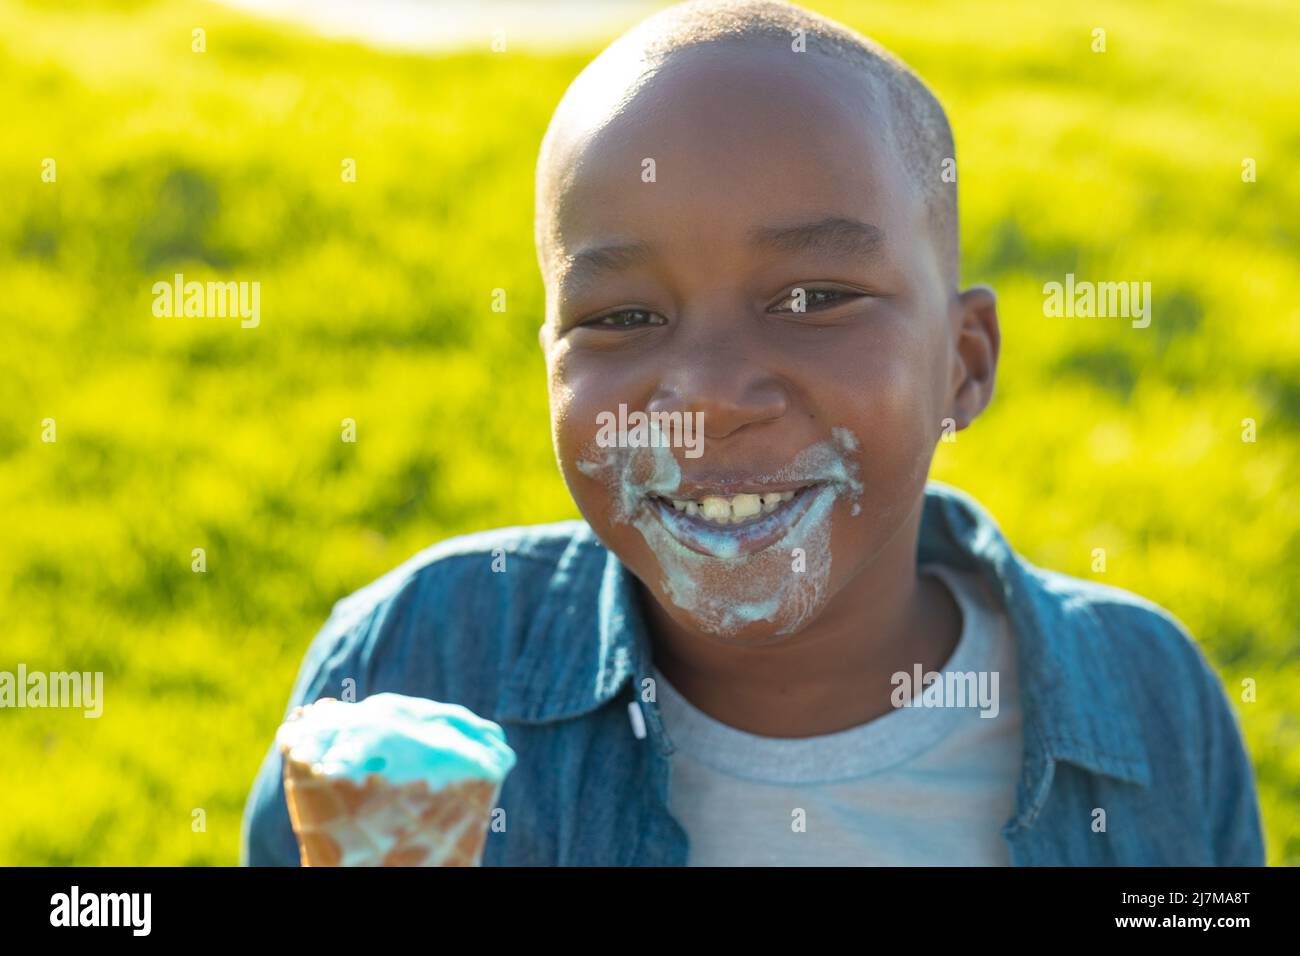 Porträt eines glücklichen afroamerikanischen Jungen mit einem chaotischen Gesicht, das im Sommer beim Essen von schmelzendem Eis zu sehen war Stockfoto